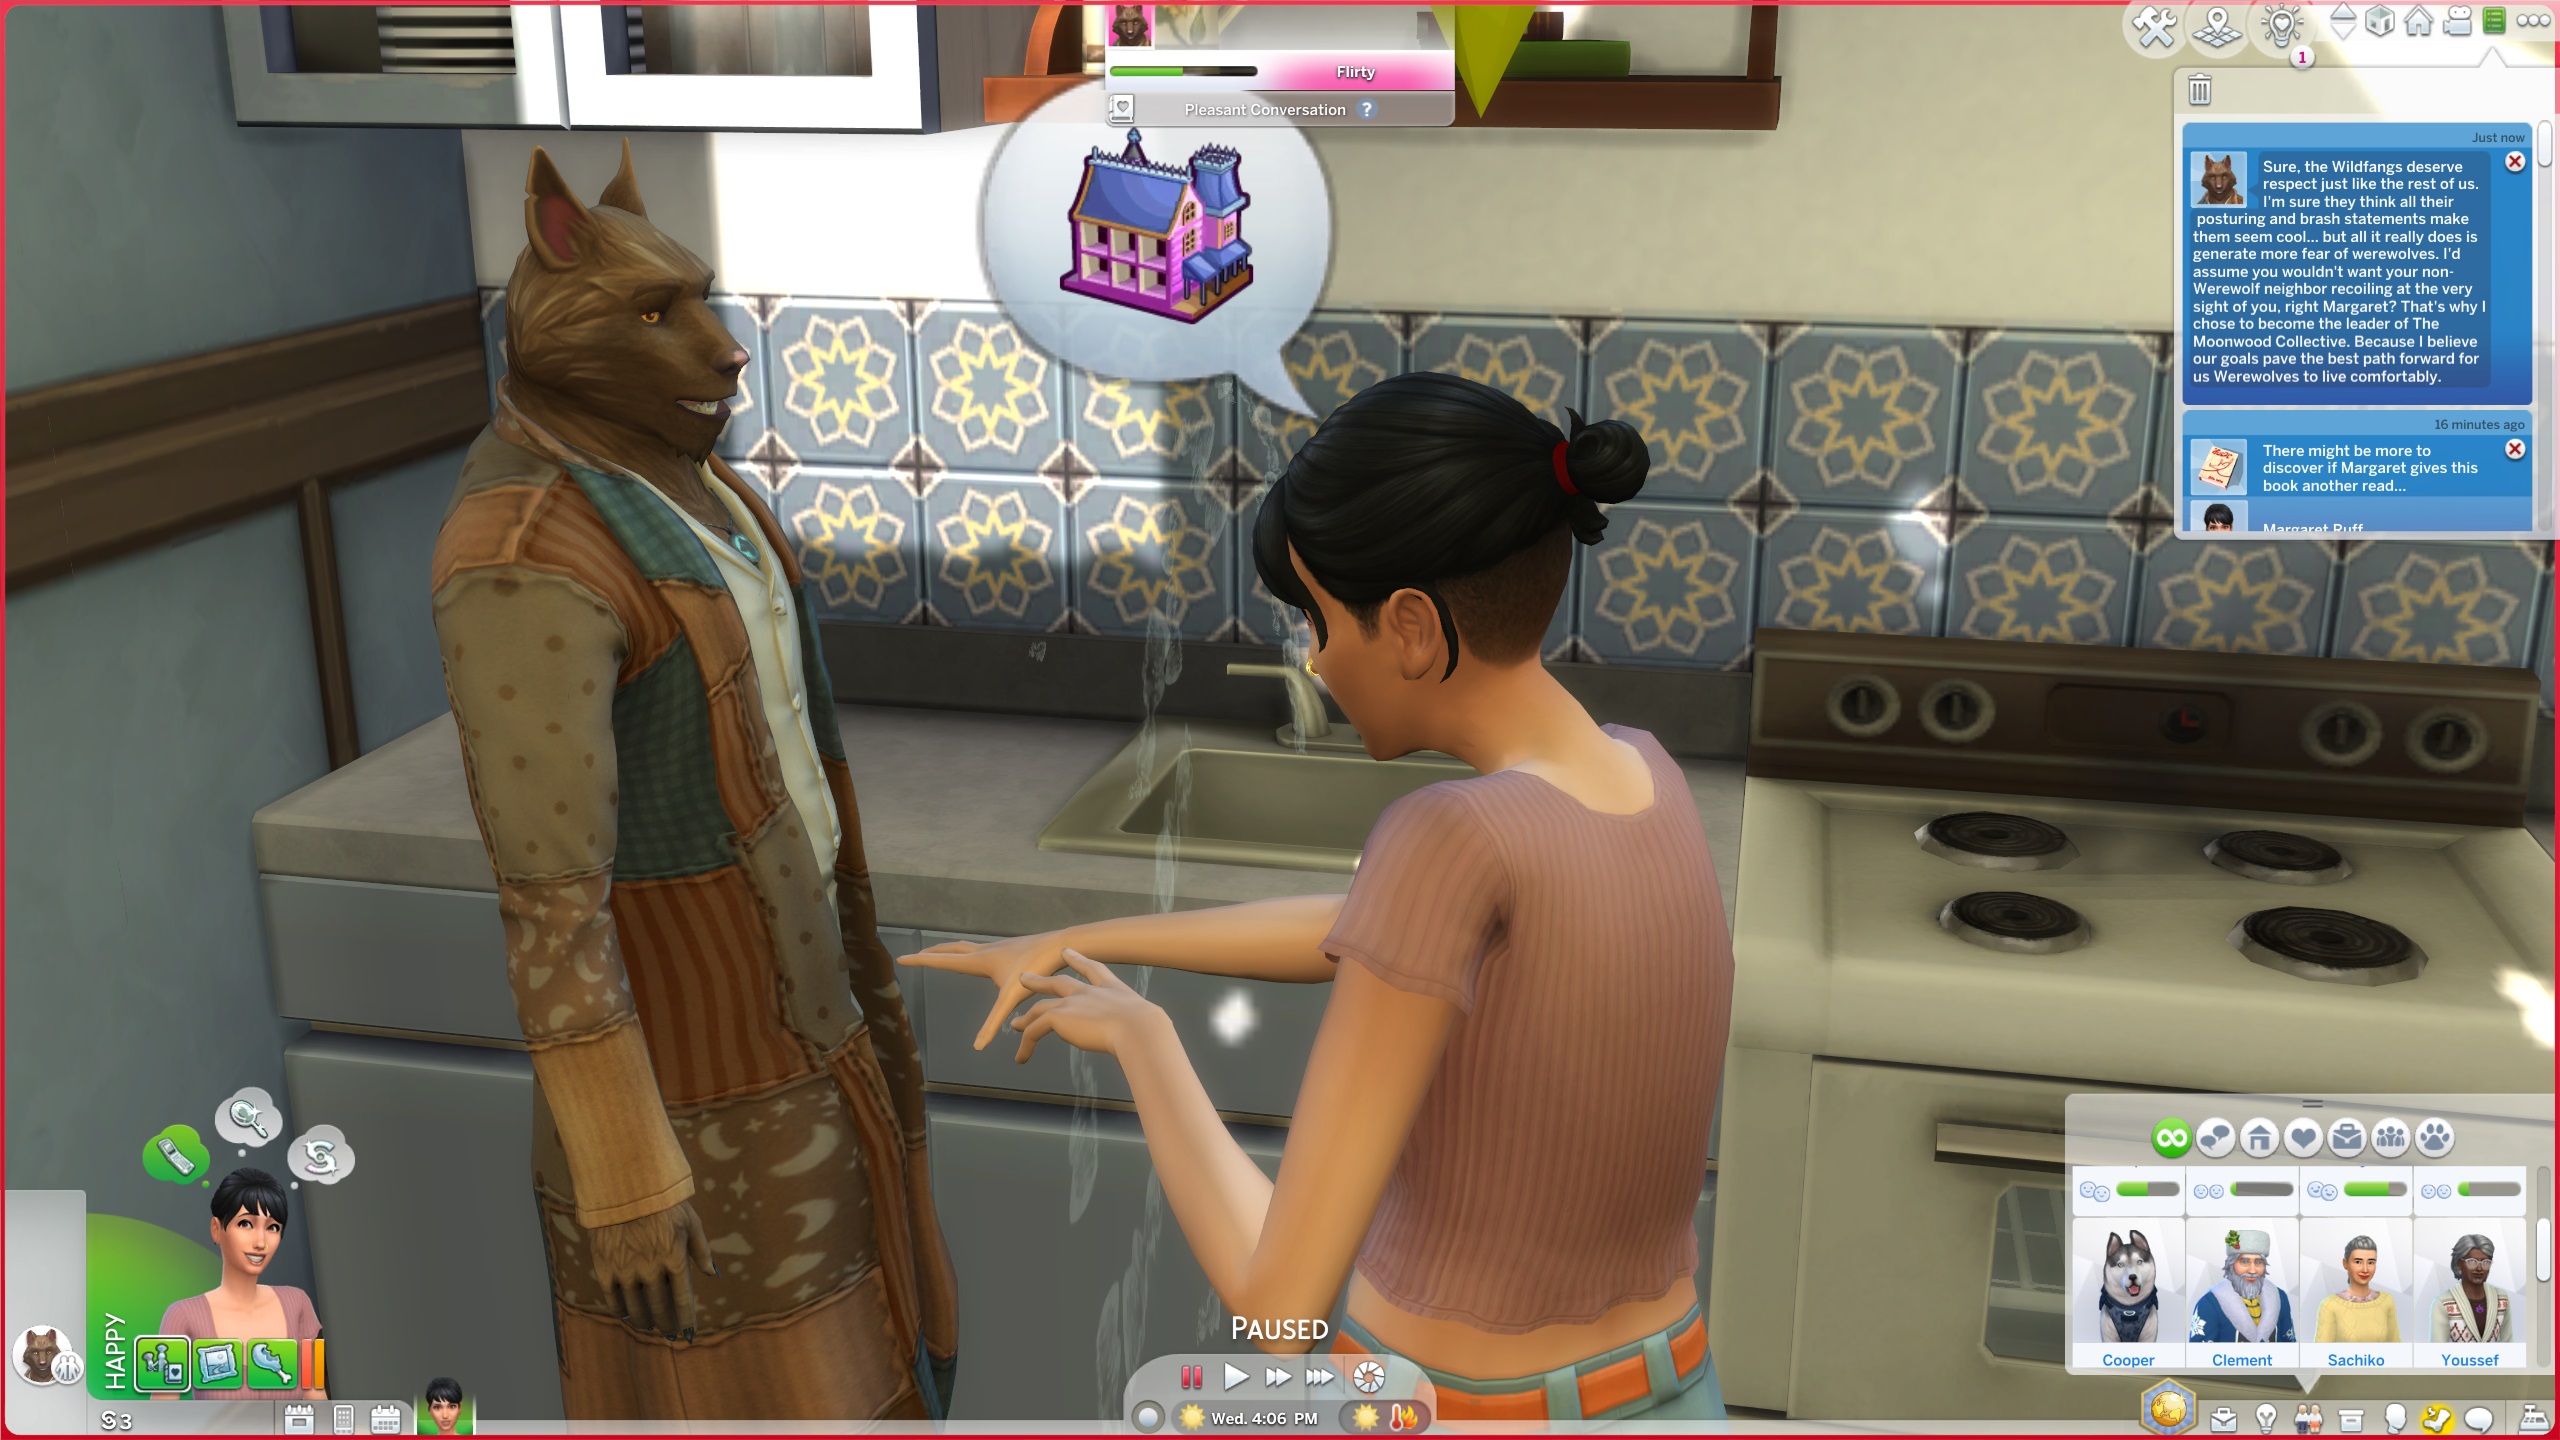 The Sims 4 Werewolves - একটি সিম রান্নাঘরে ক্রিস্টোফার ওয়ারউলফের সাথে কথা বলছে।